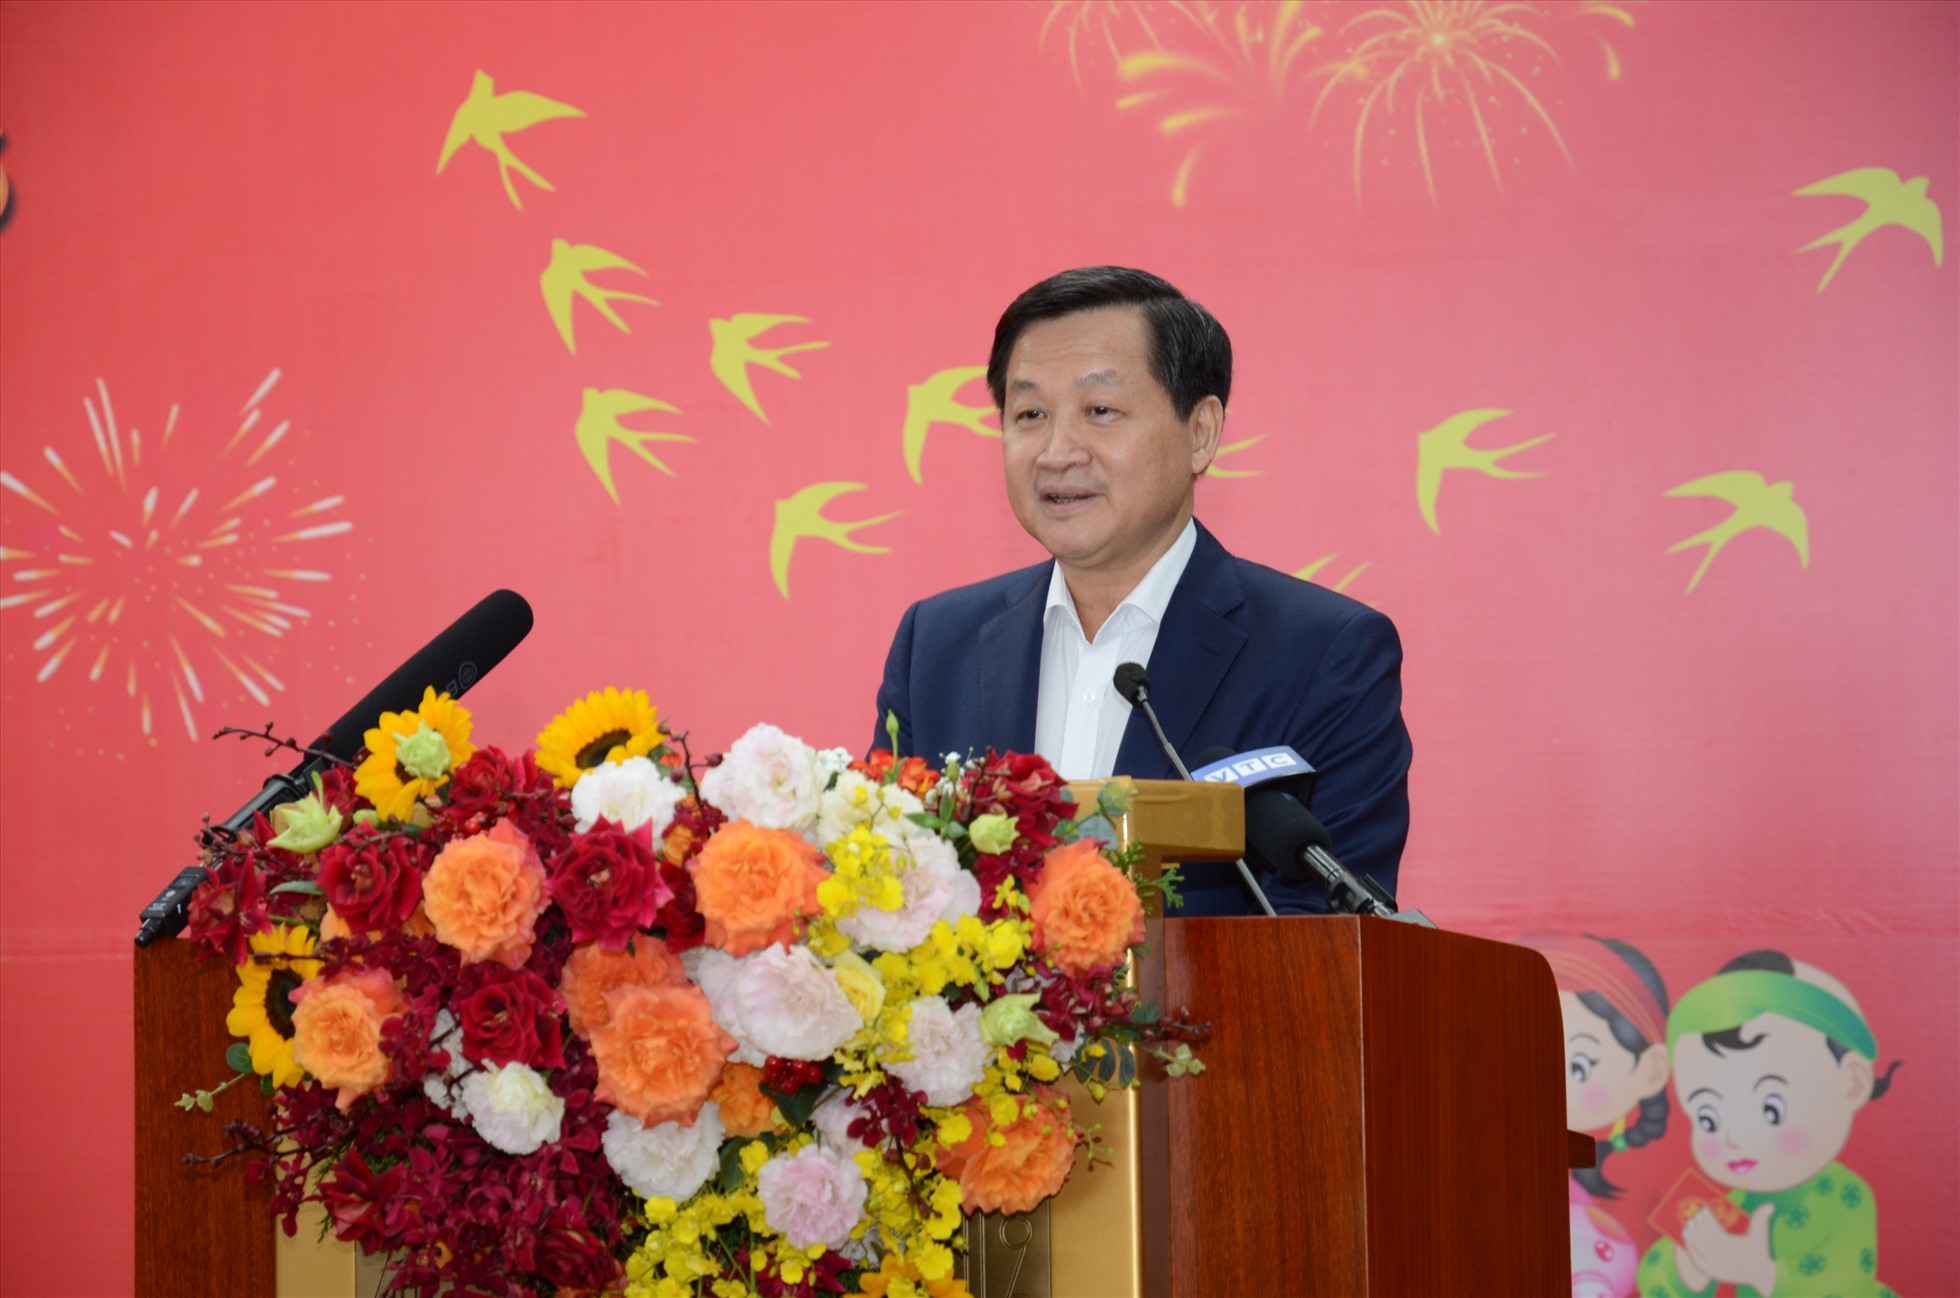 Phó Thủ tướng Lê Minh Khái phát biểu tại buổi trao quà hộ nghèo, gia đình chính sách và công nhân lao động ngày 14.1. Ảnh: Diệu Thúy